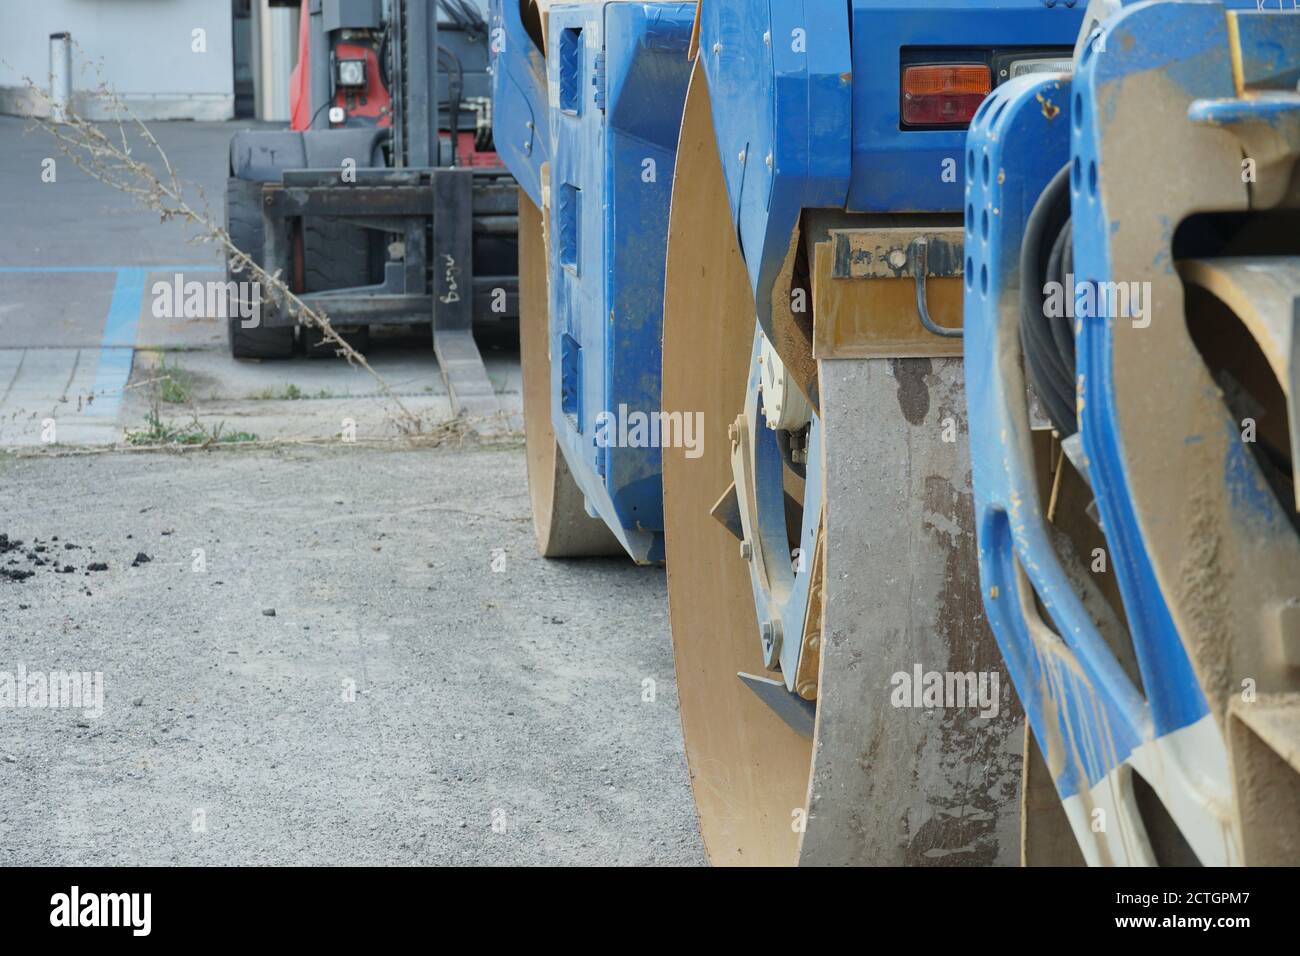 Schwere technische Ausrüstung einschließlich blaue Fertiger Trommel Split Roller und rot und schwarz Gabelstapler Stapler geparkt am Wochenende Tage in der Nähe der Konstruktion. Stockfoto